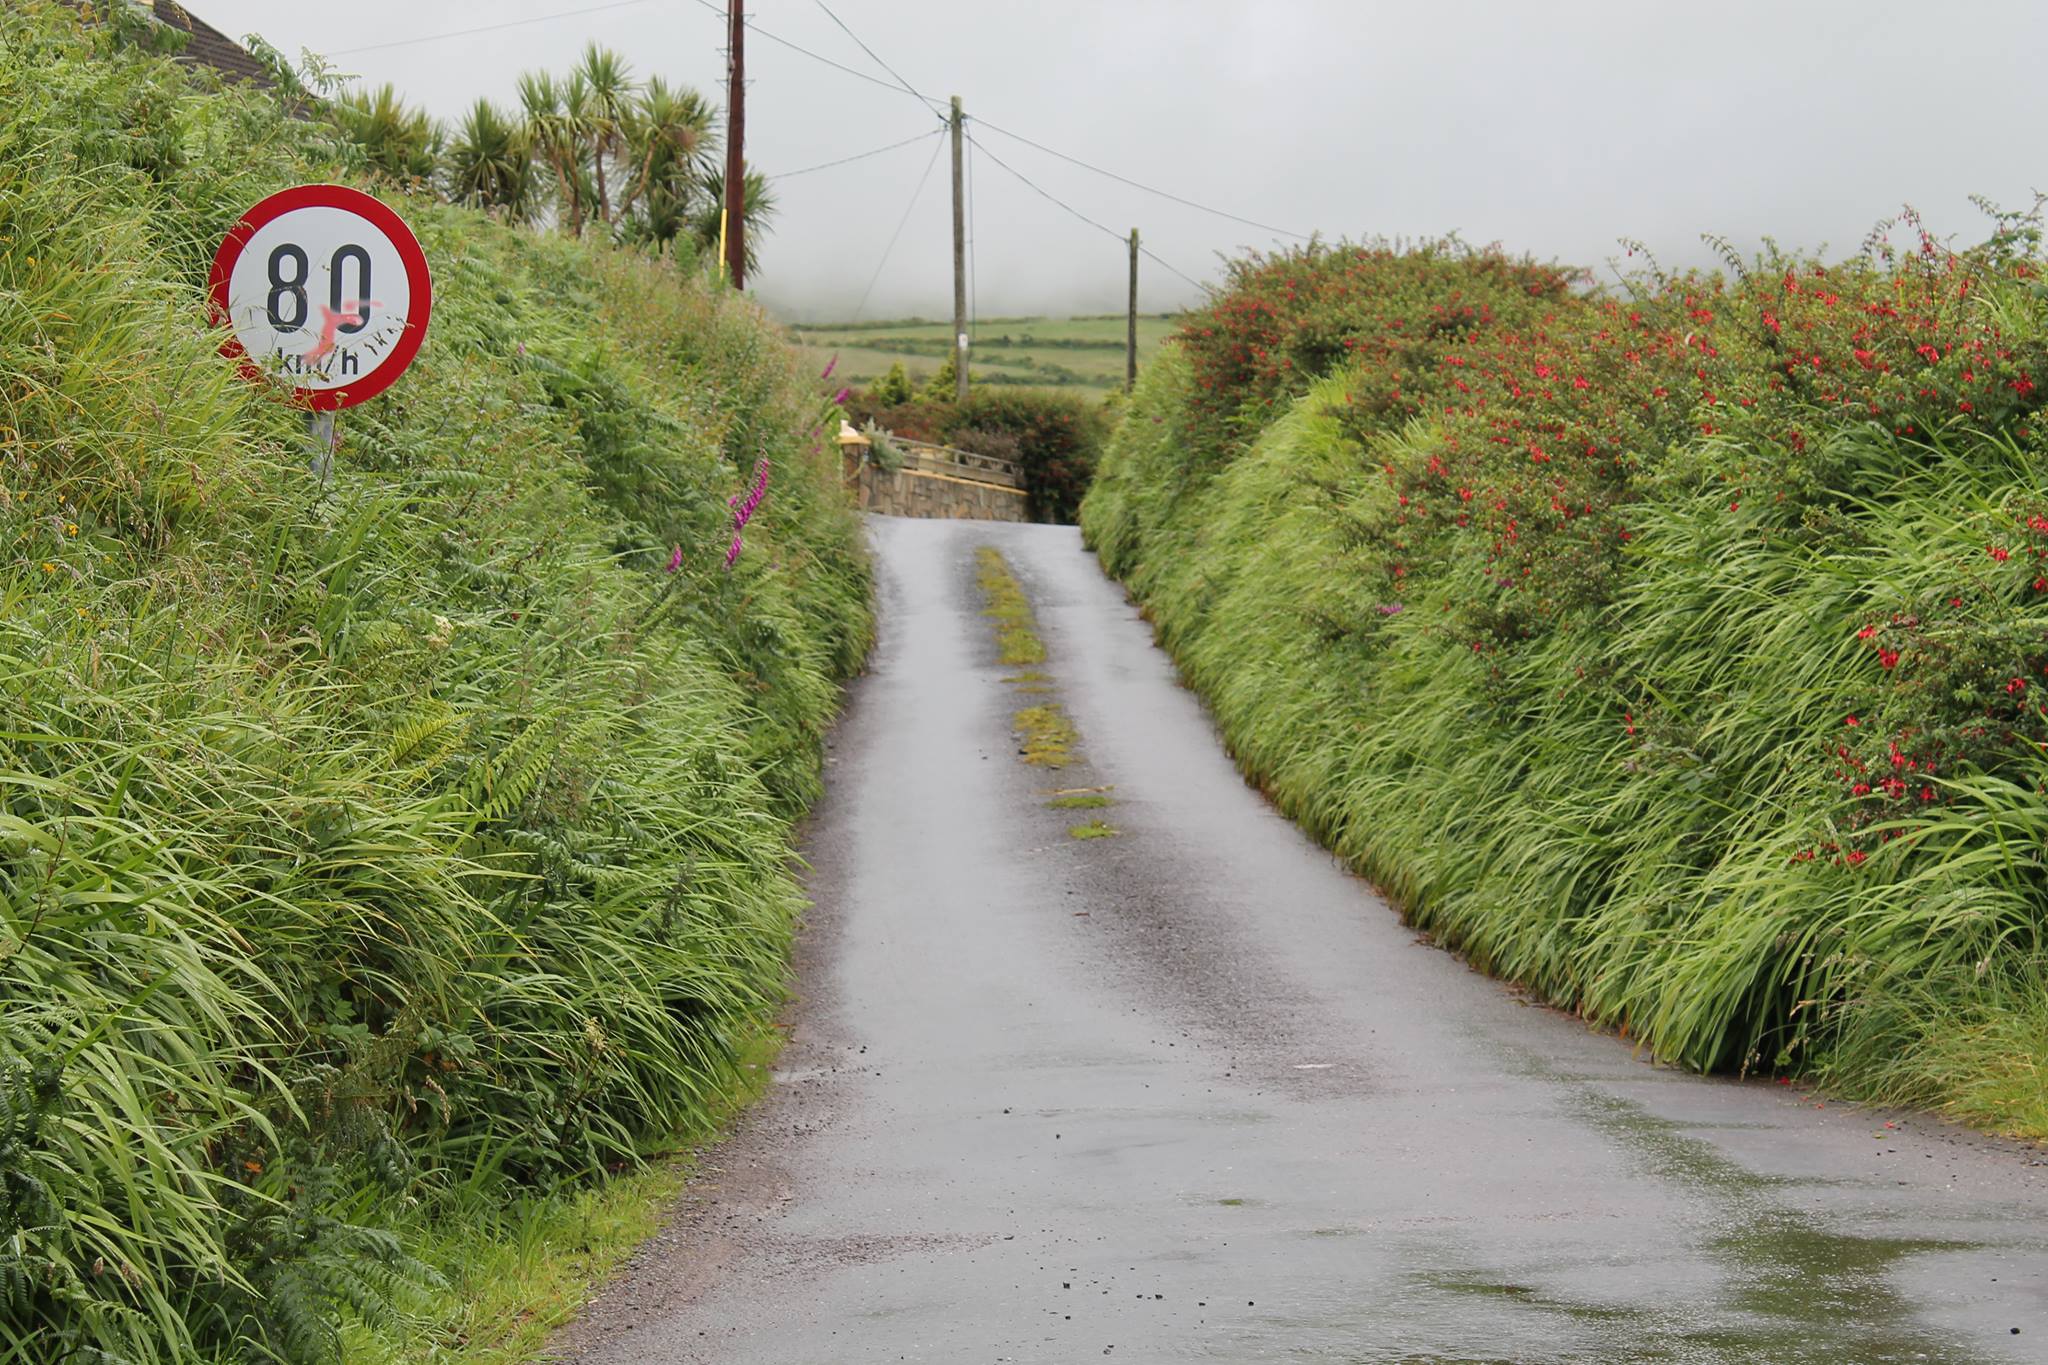 Road in Ireland